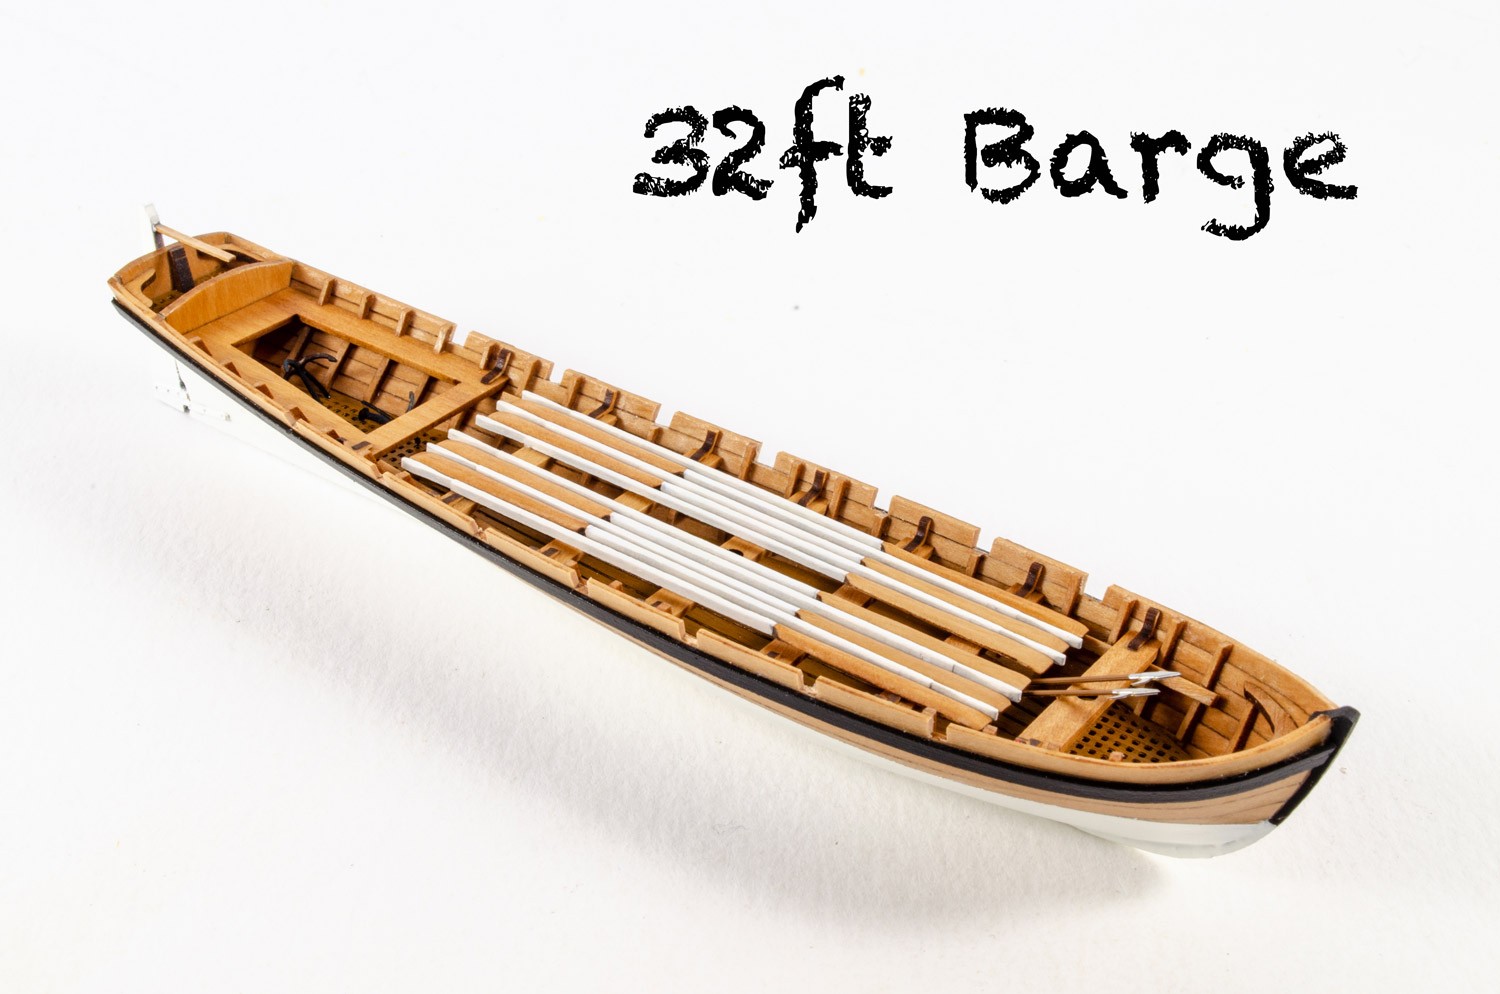 32ft Barge (Vanguard Models, 151mm)